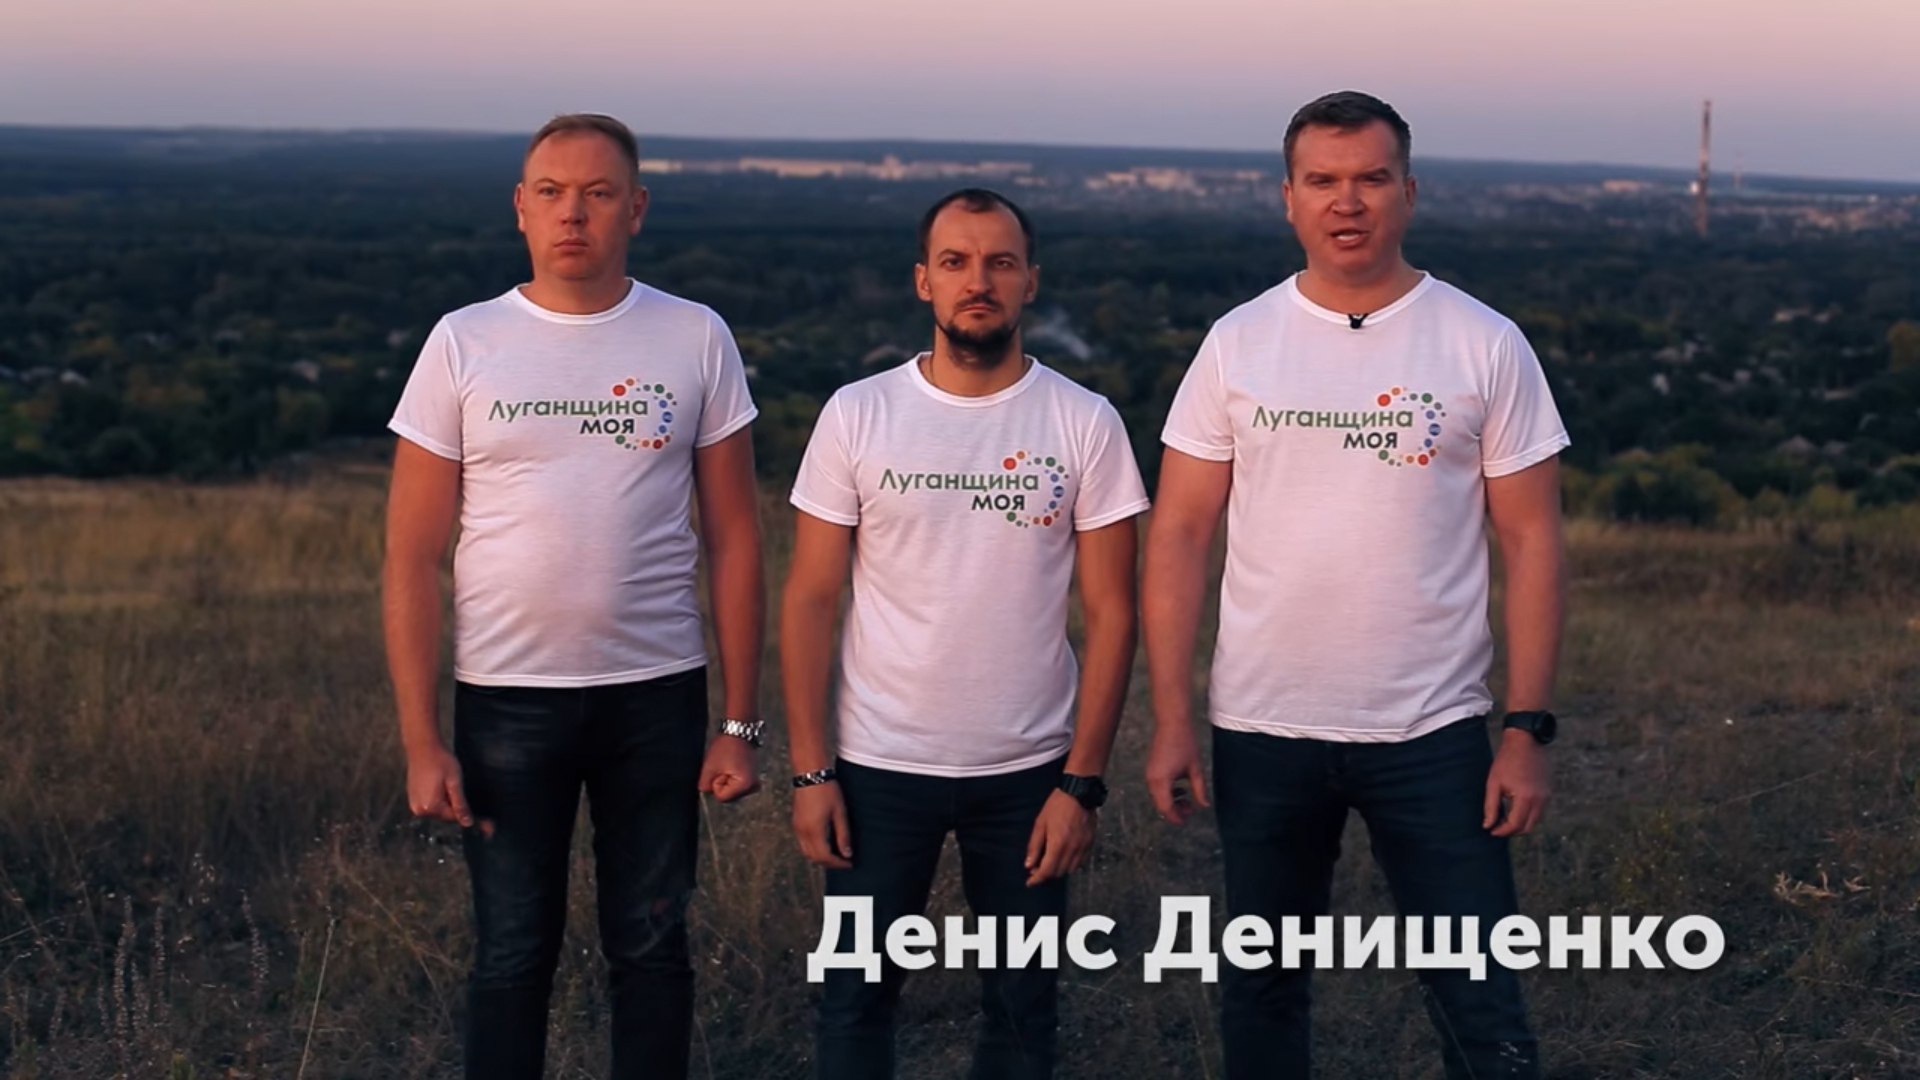 "Иду в Луганск". Чего хотели добиться резонансной акцией